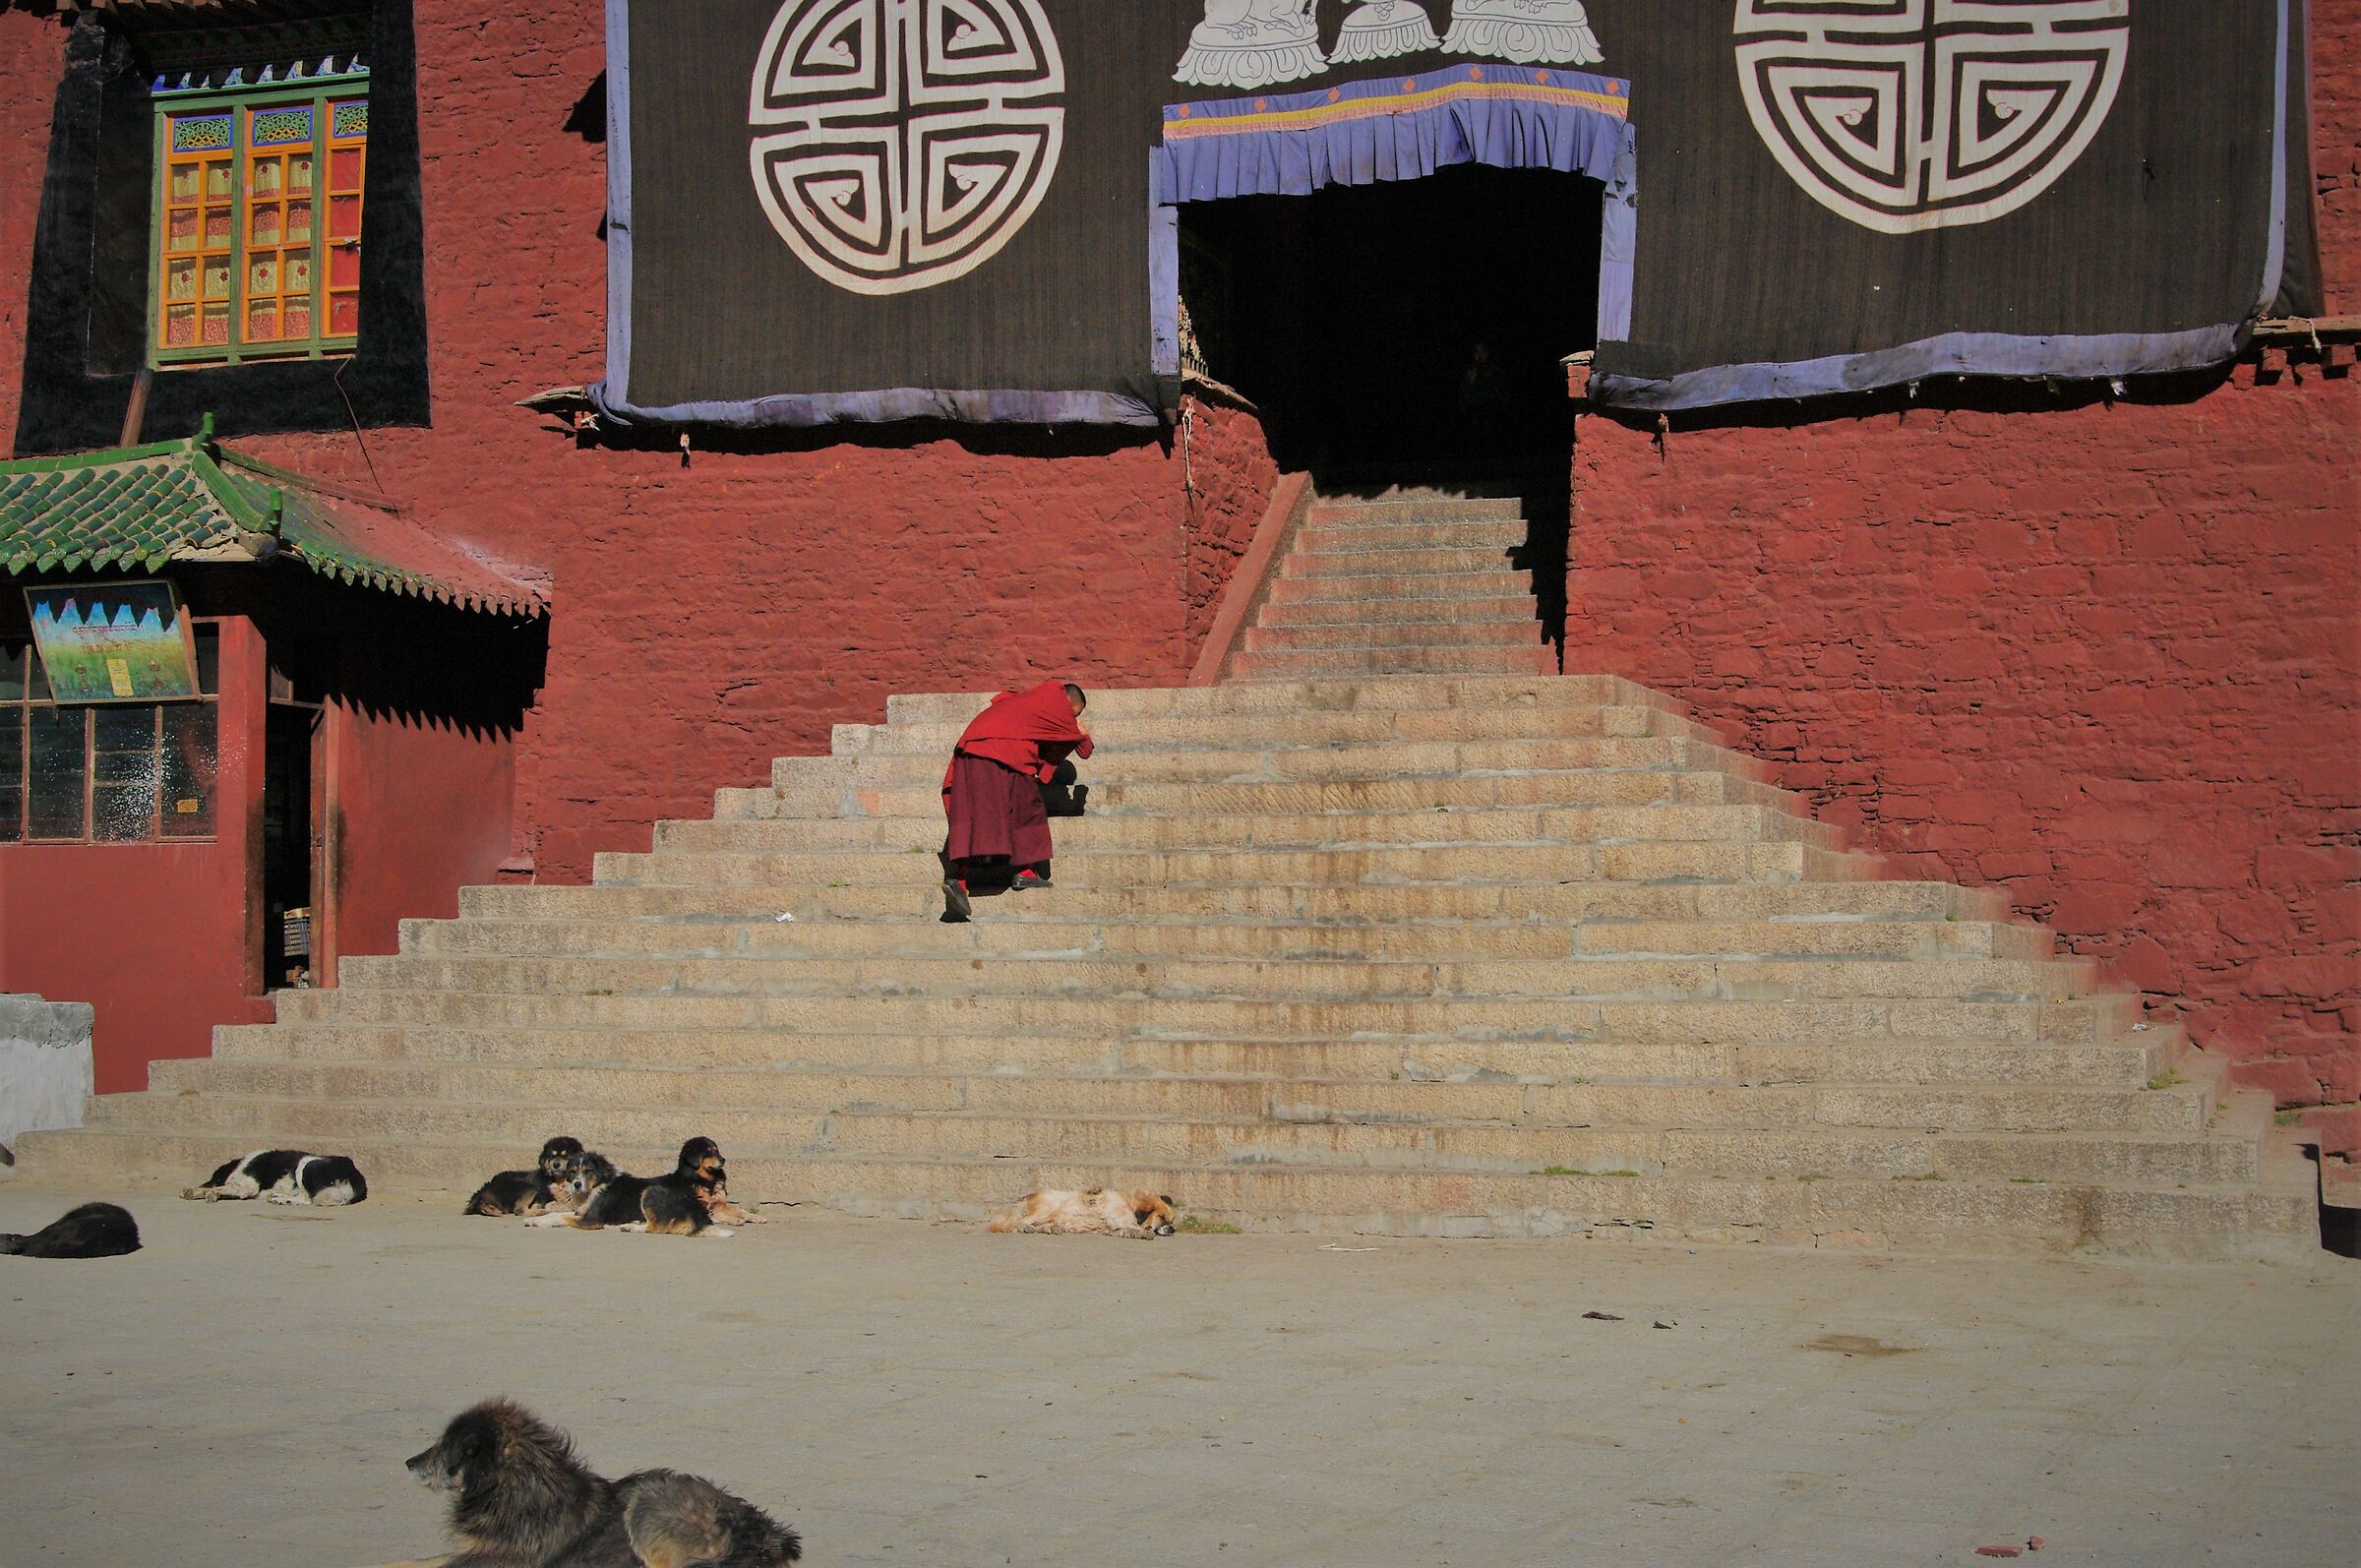 Nel tempio Tibetano sono ammessi tutti...